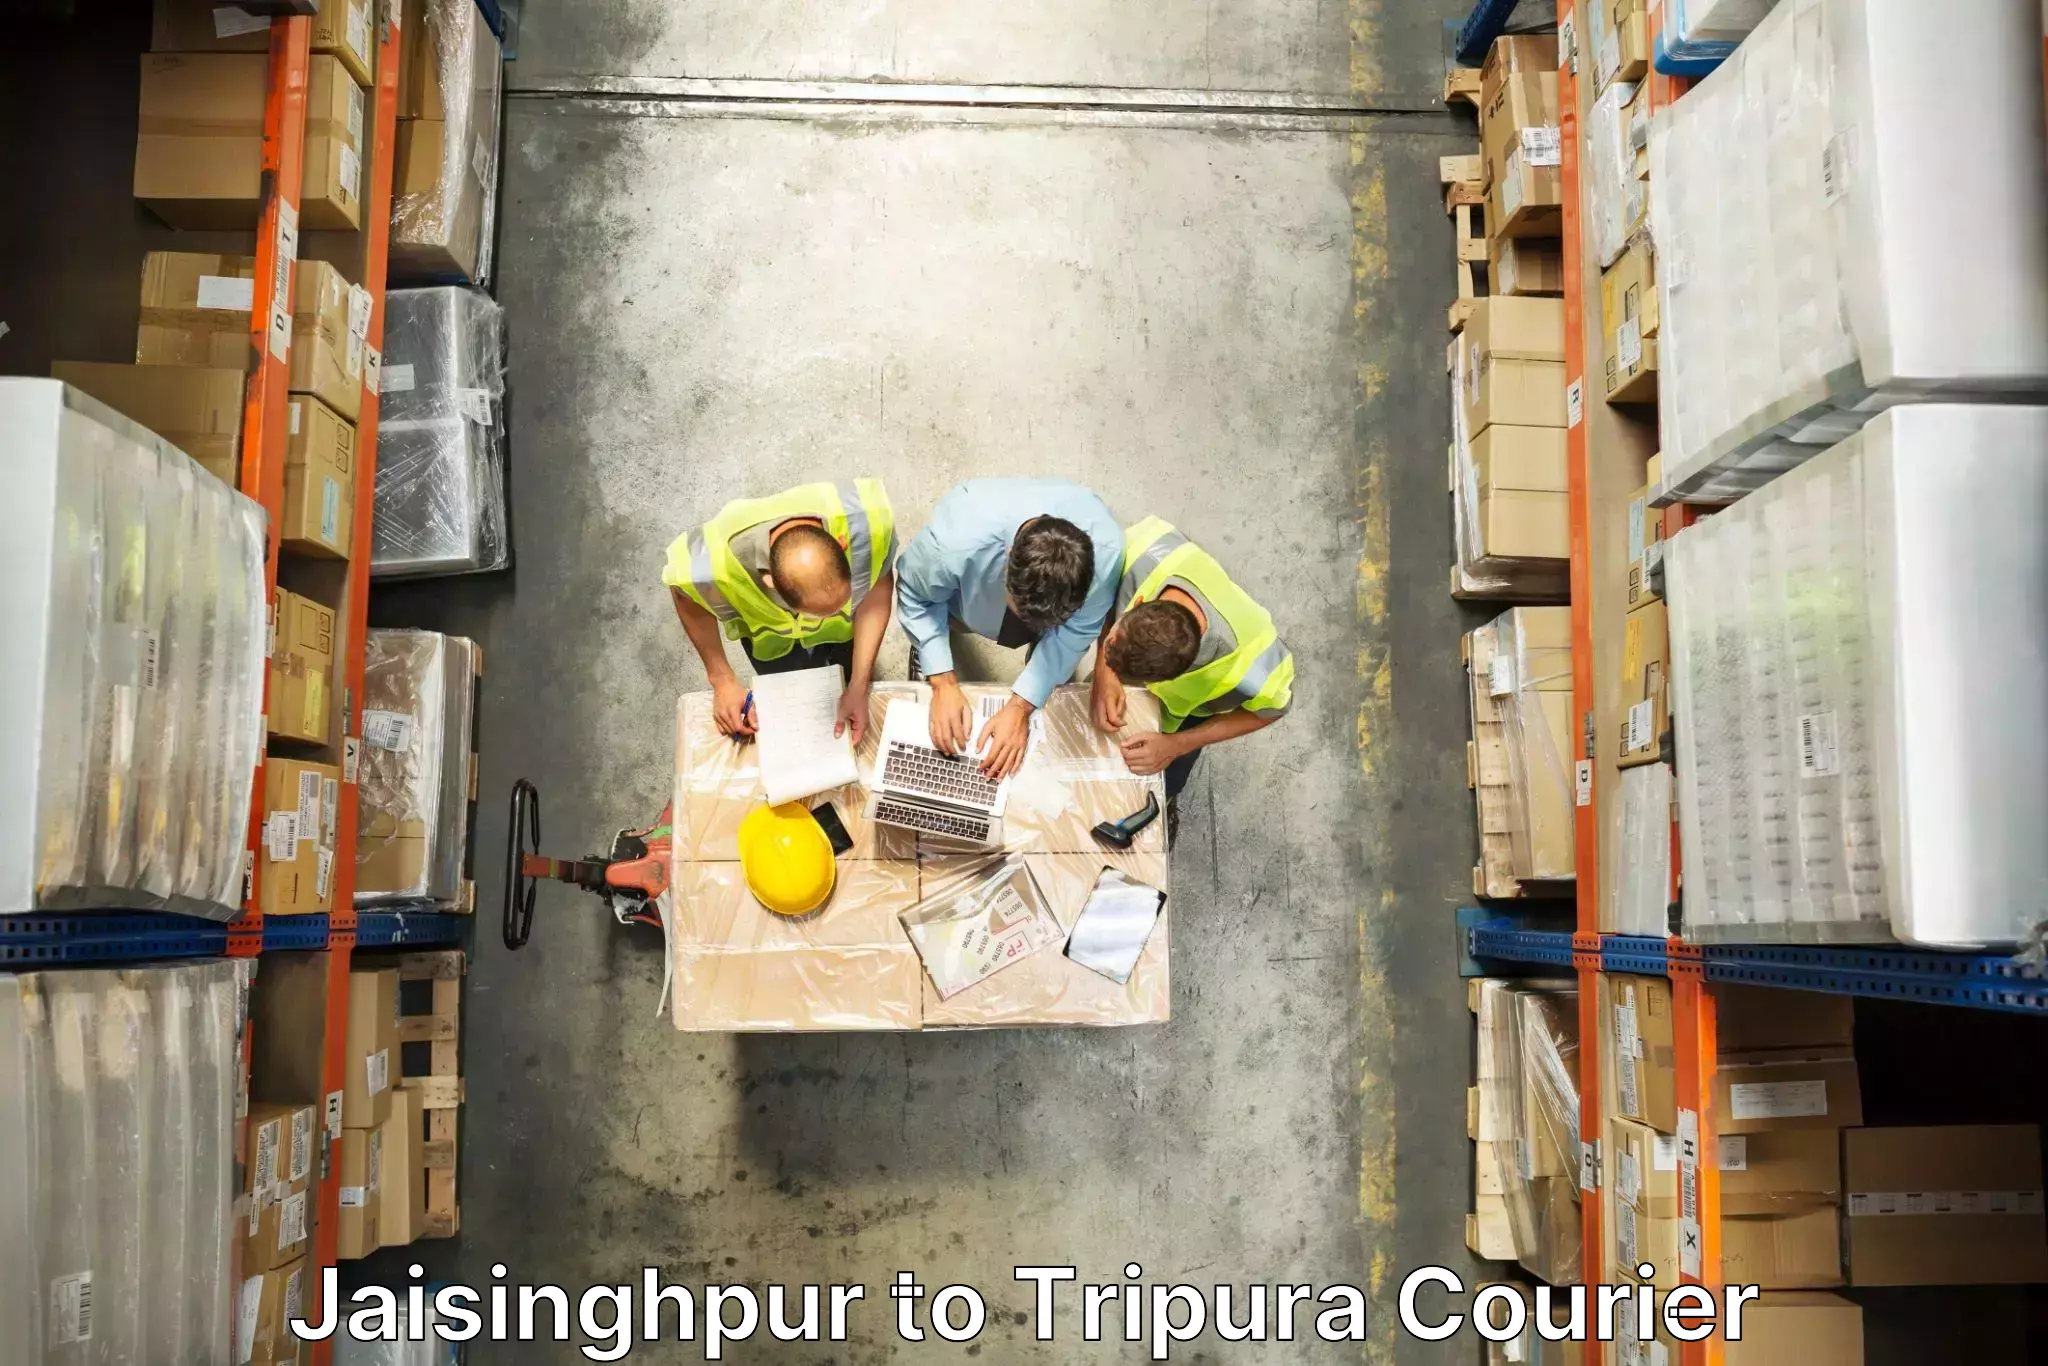 Trusted furniture movers Jaisinghpur to Udaipur Tripura